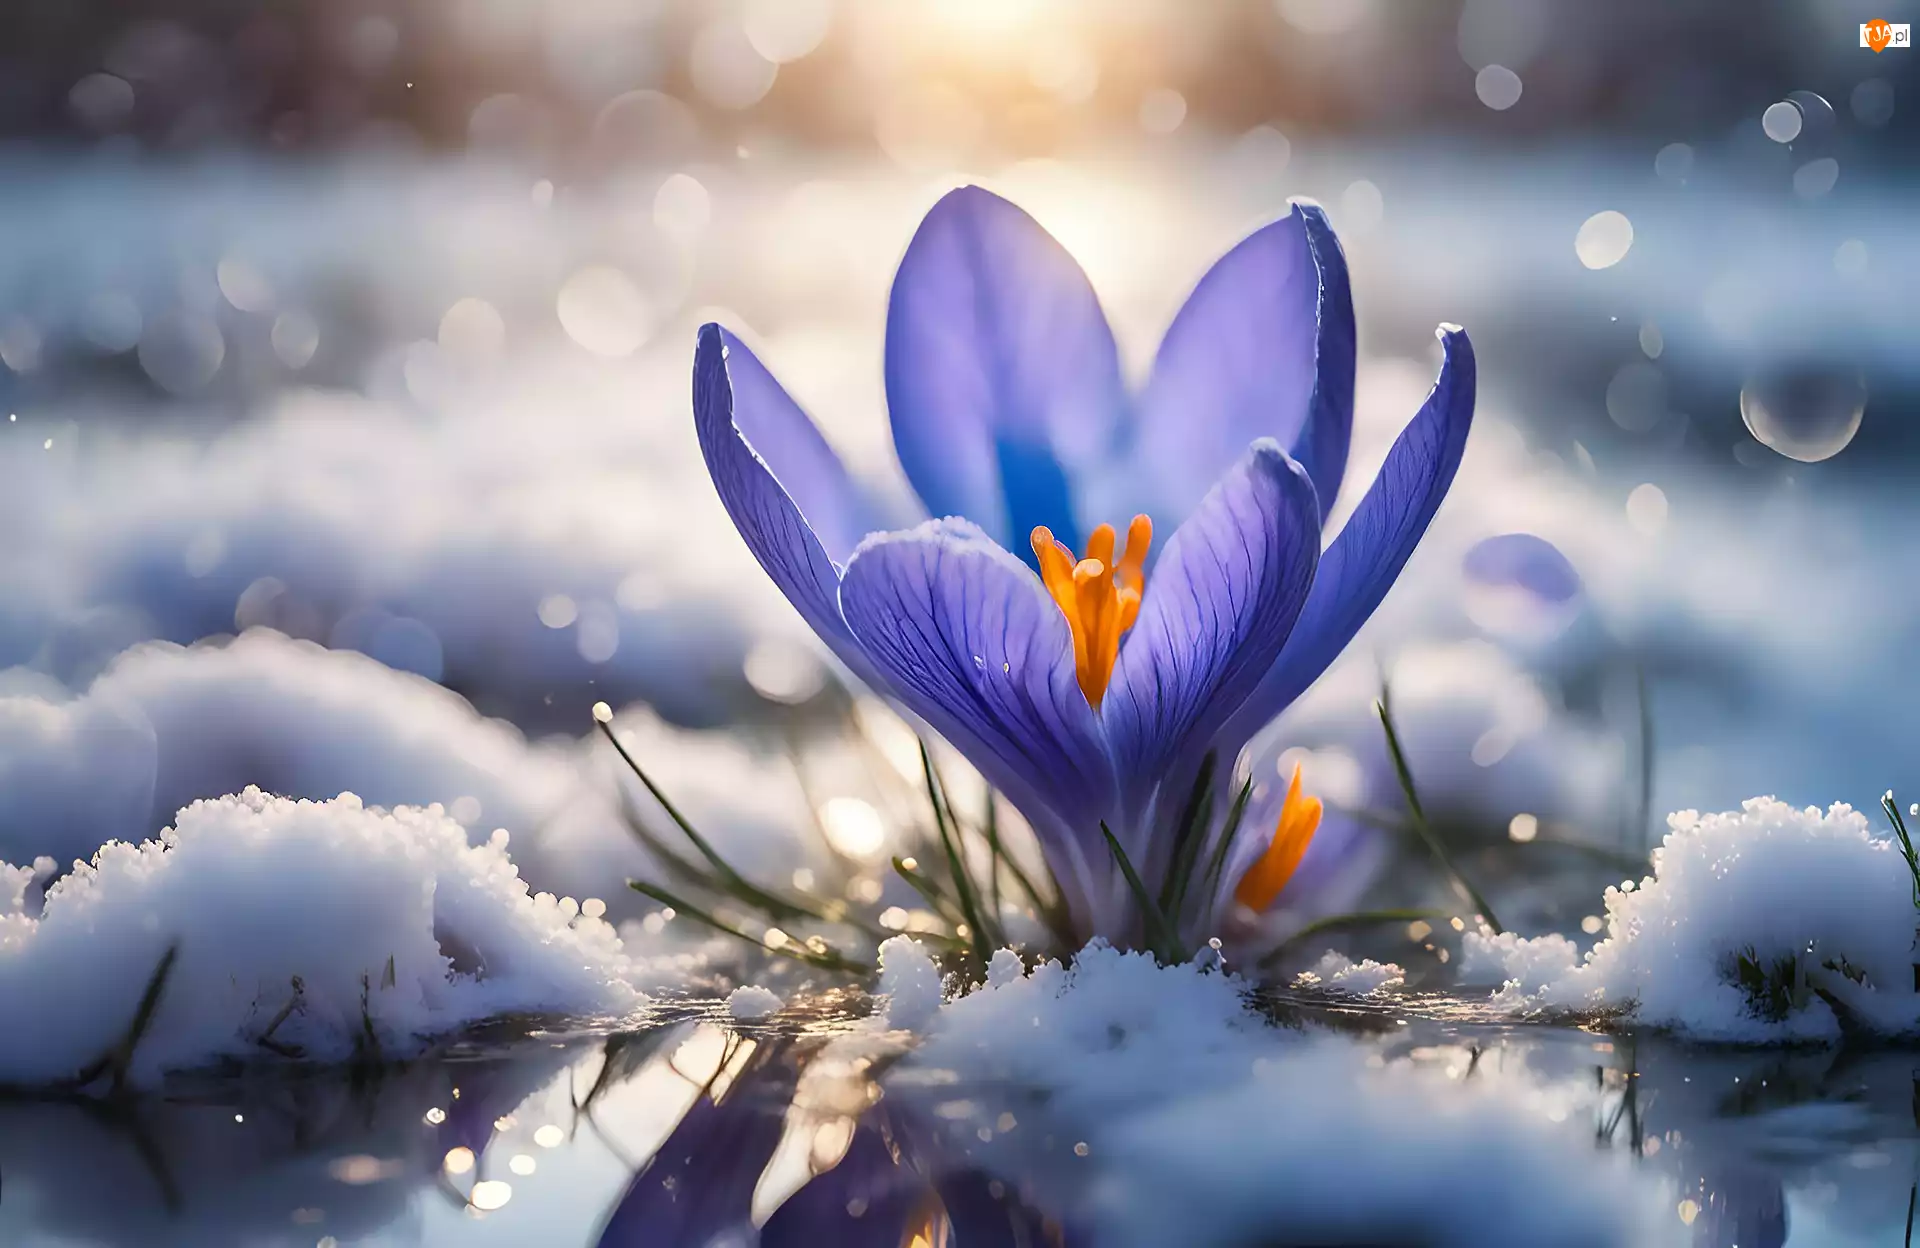 Śnieg, Fioletowy, Krokus, Kwiat